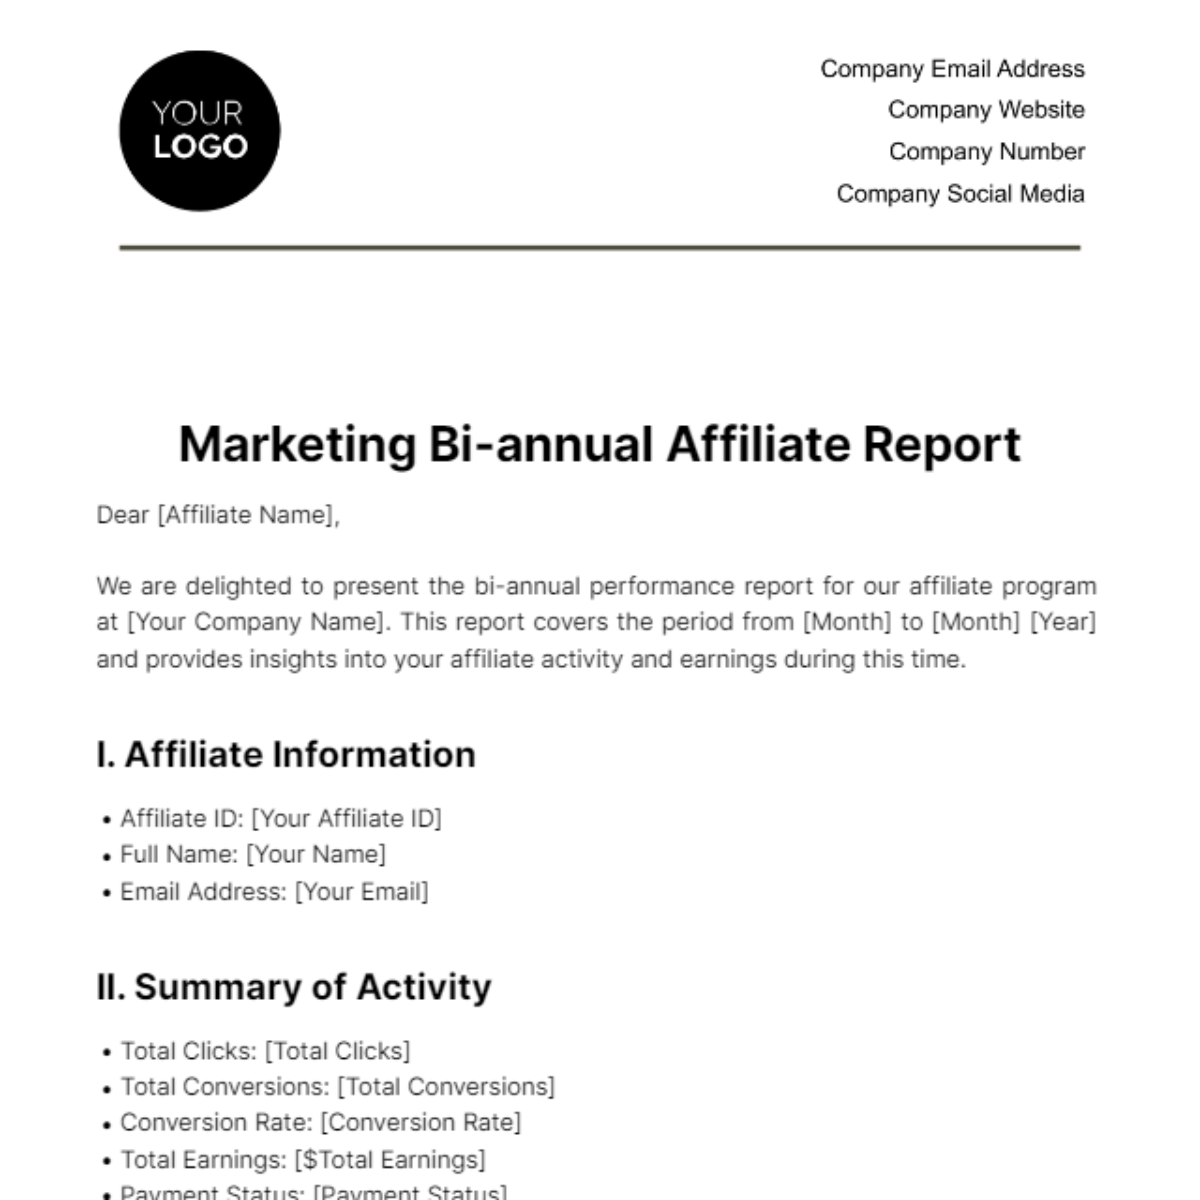 Free Marketing Bi-annual Affiliate Report Template